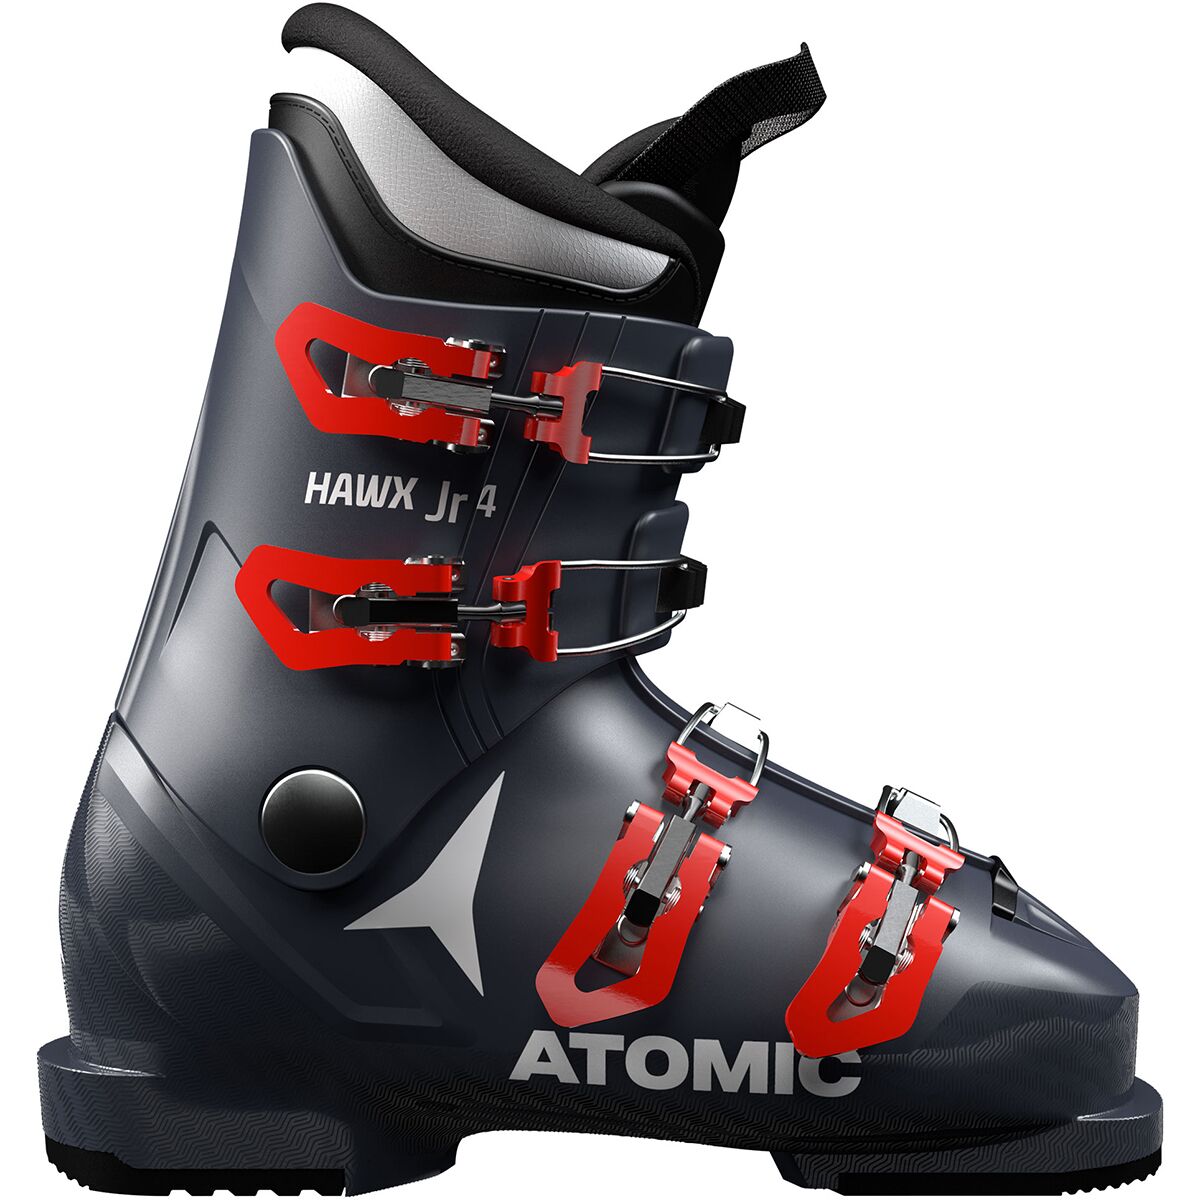 Atomic Hawx Jr 4 Ski Boot - 2022 - Kids'